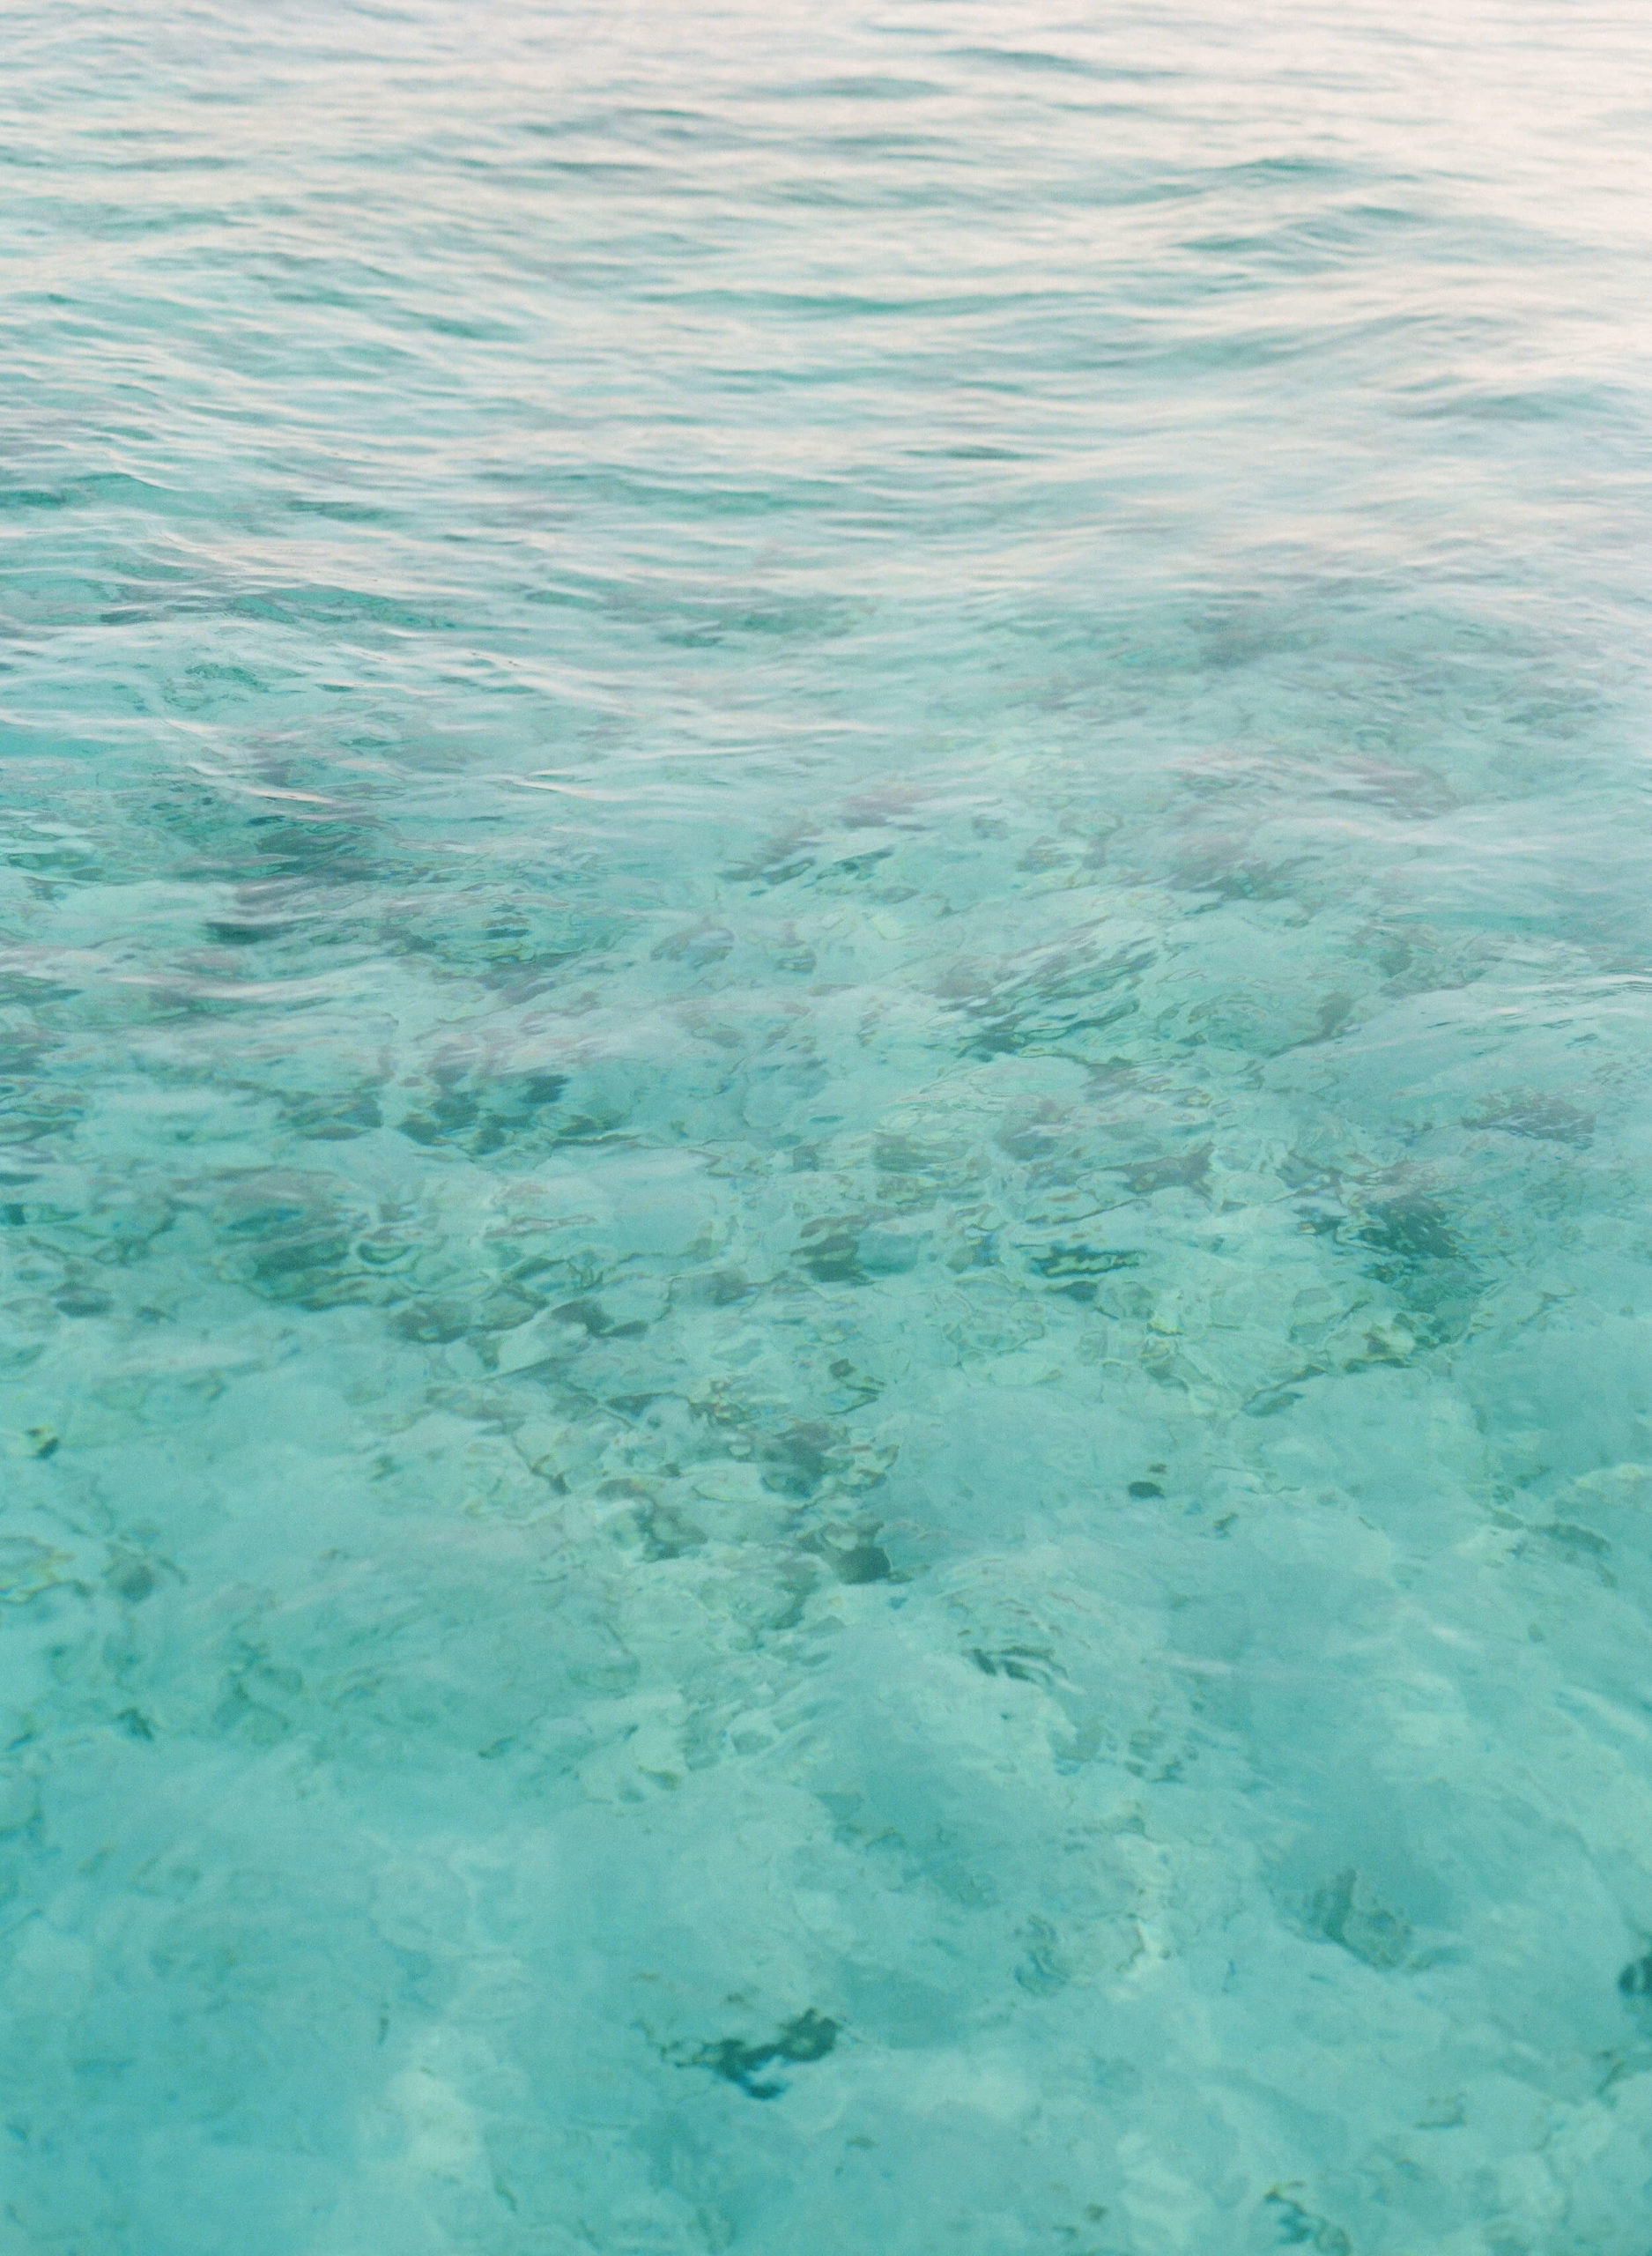 Maldives waters